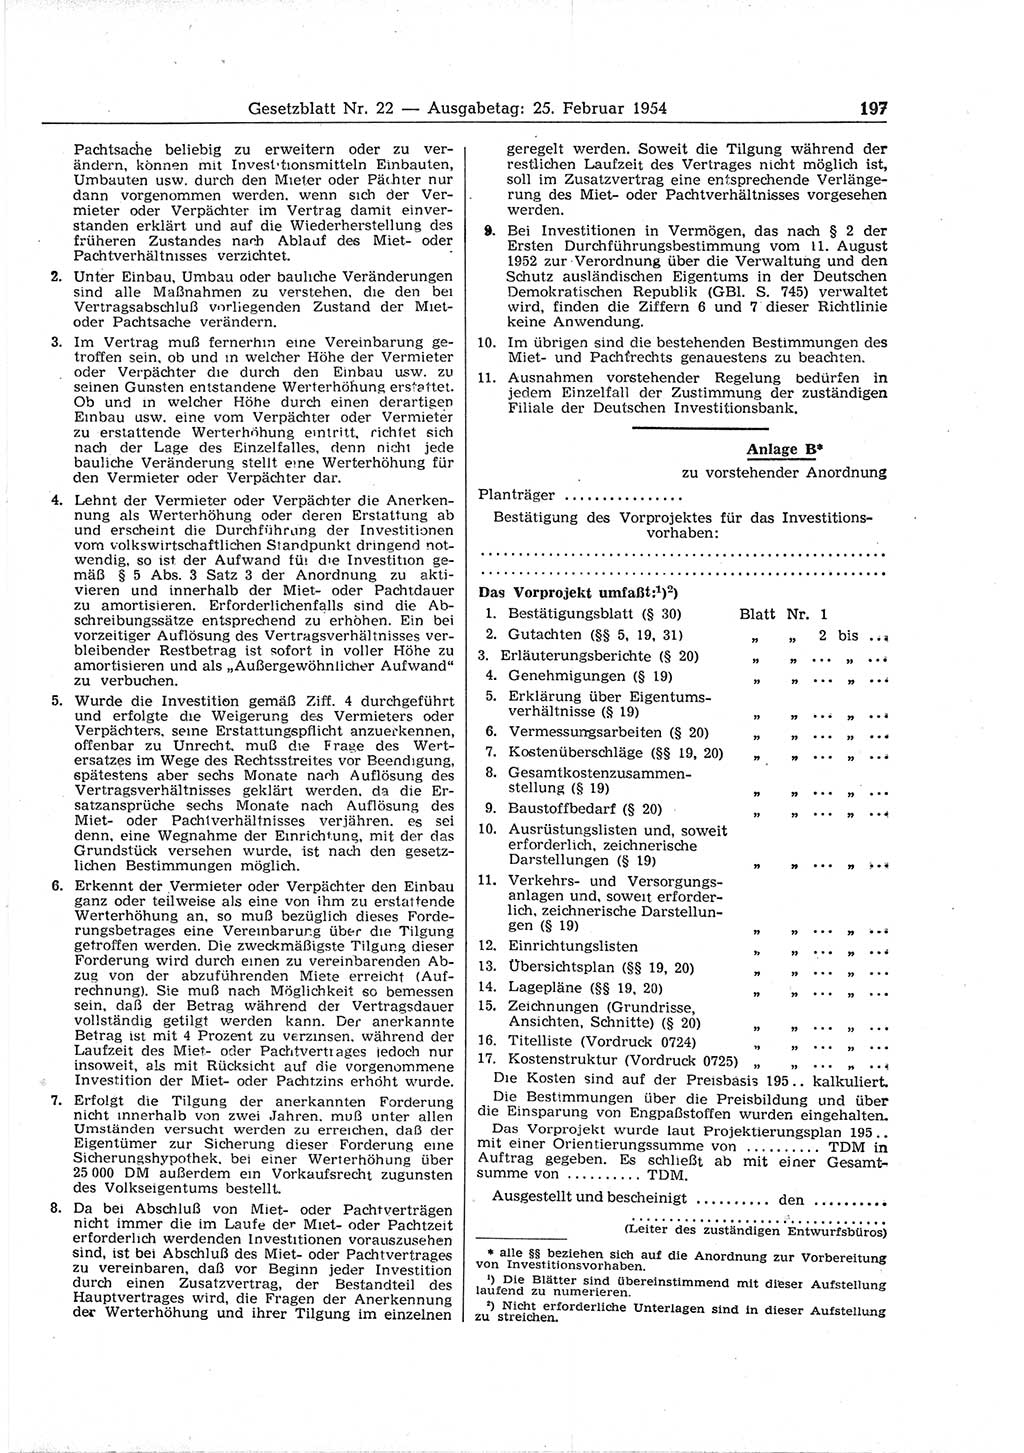 Gesetzblatt (GBl.) der Deutschen Demokratischen Republik (DDR) 1954, Seite 197 (GBl. DDR 1954, S. 197)